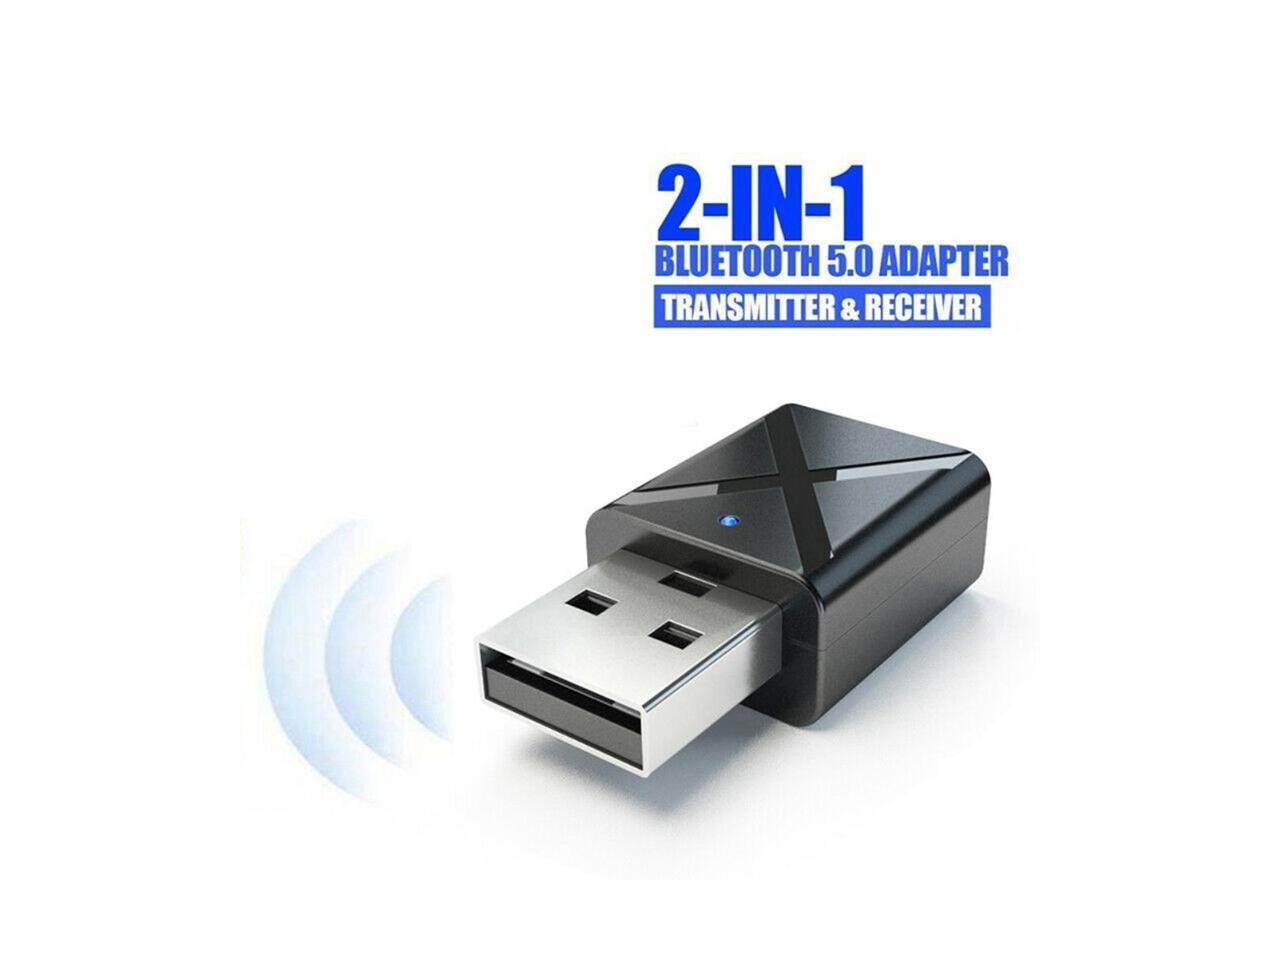 Bisschop Kudde zuiden Wireless USB Bluetooth Adapter BT 5.0 Dongle Music, PC - Newegg.com